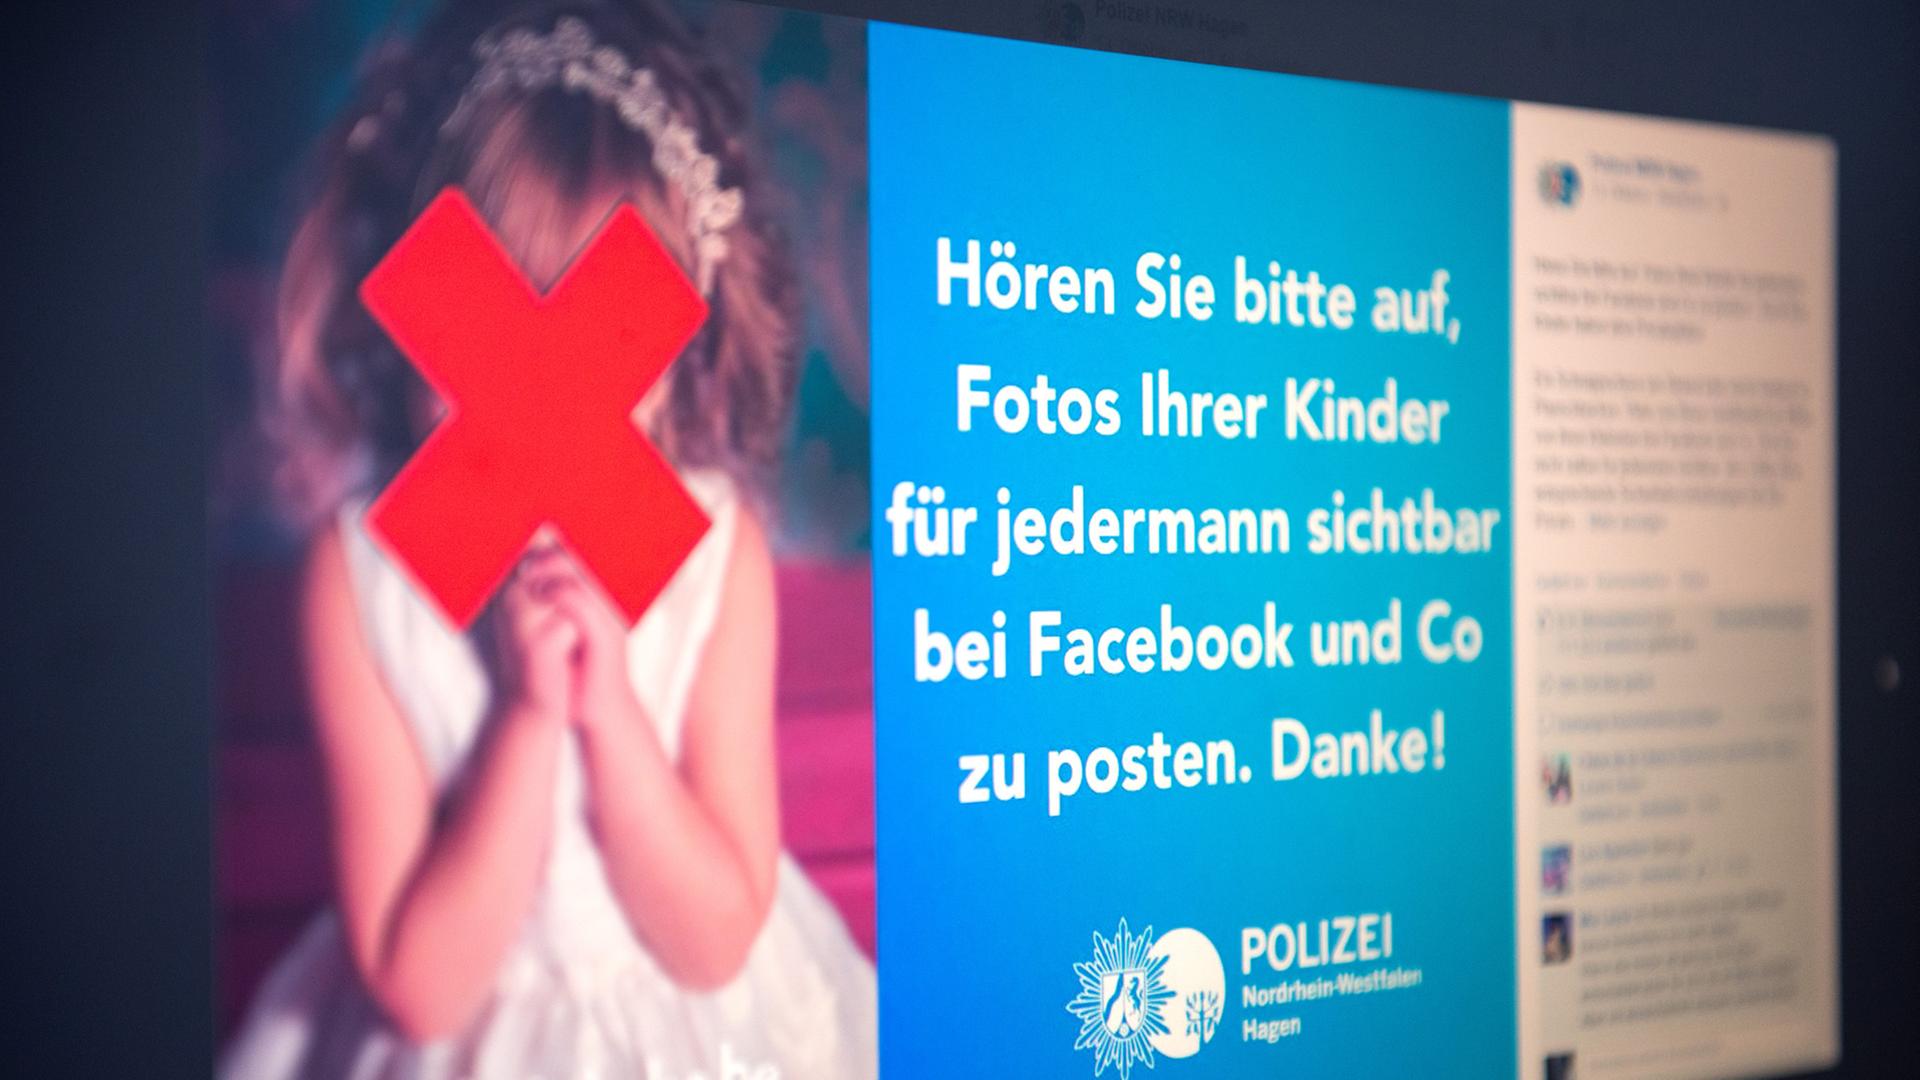 Facebook-Post der Polizei Hagen mit einem durchgestrichenem Foto eines Mädchens und dem Appell "Hören Sie bitte auf, Fotos Ihrer Kinder für jedermann sichtbar bei Facebook und Co zu posten. Danke!"